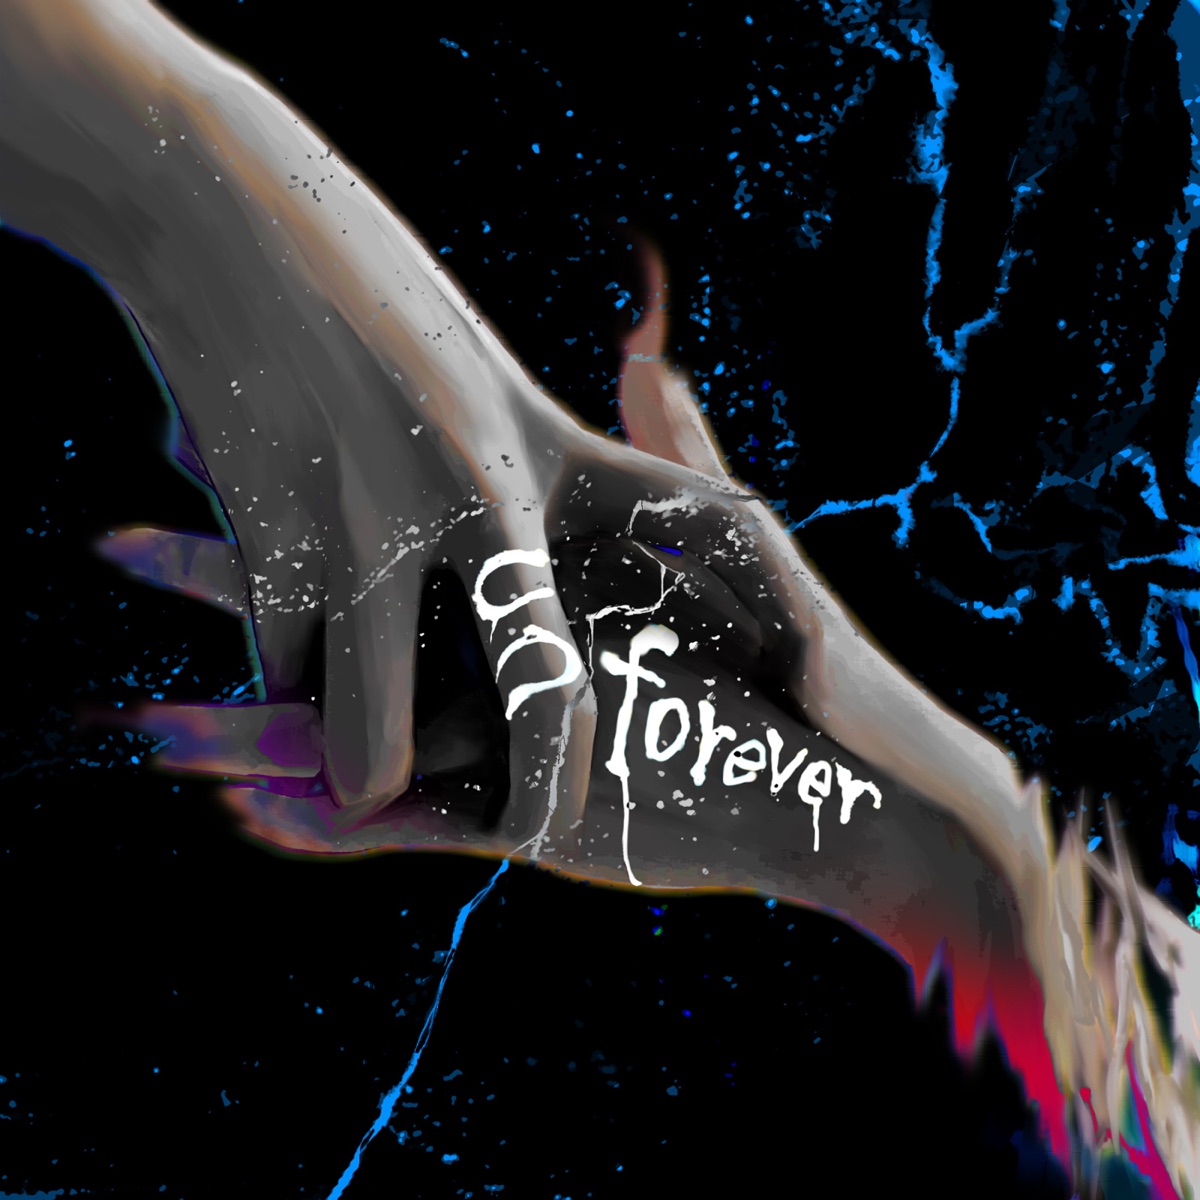 Cover art for『Rib - unforever』from the release『unforever』